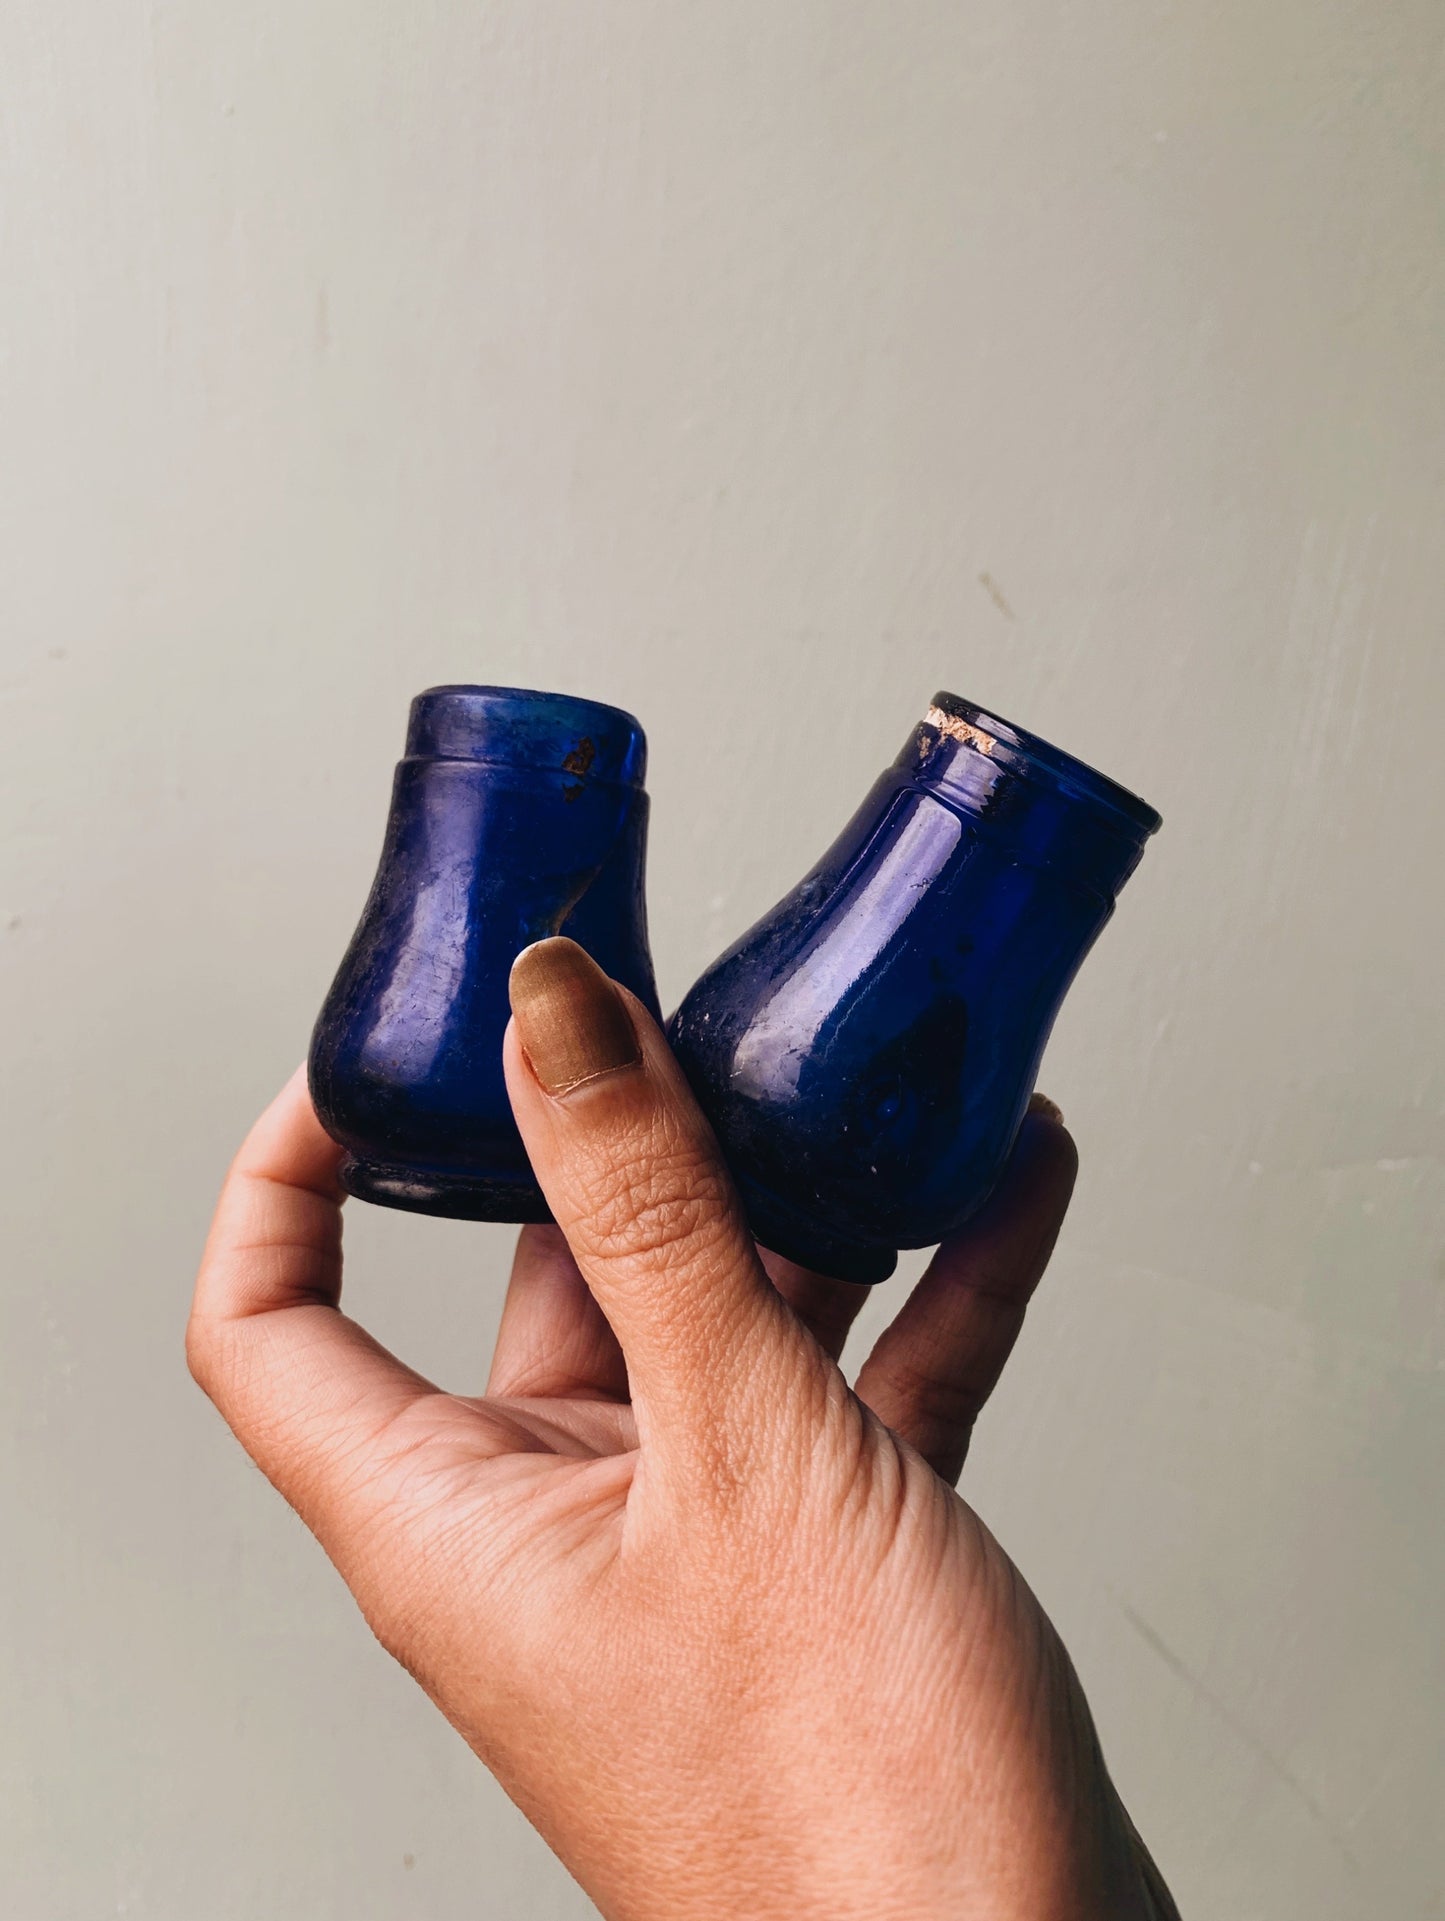 Two Antique Cobalt Blue Glass Pots